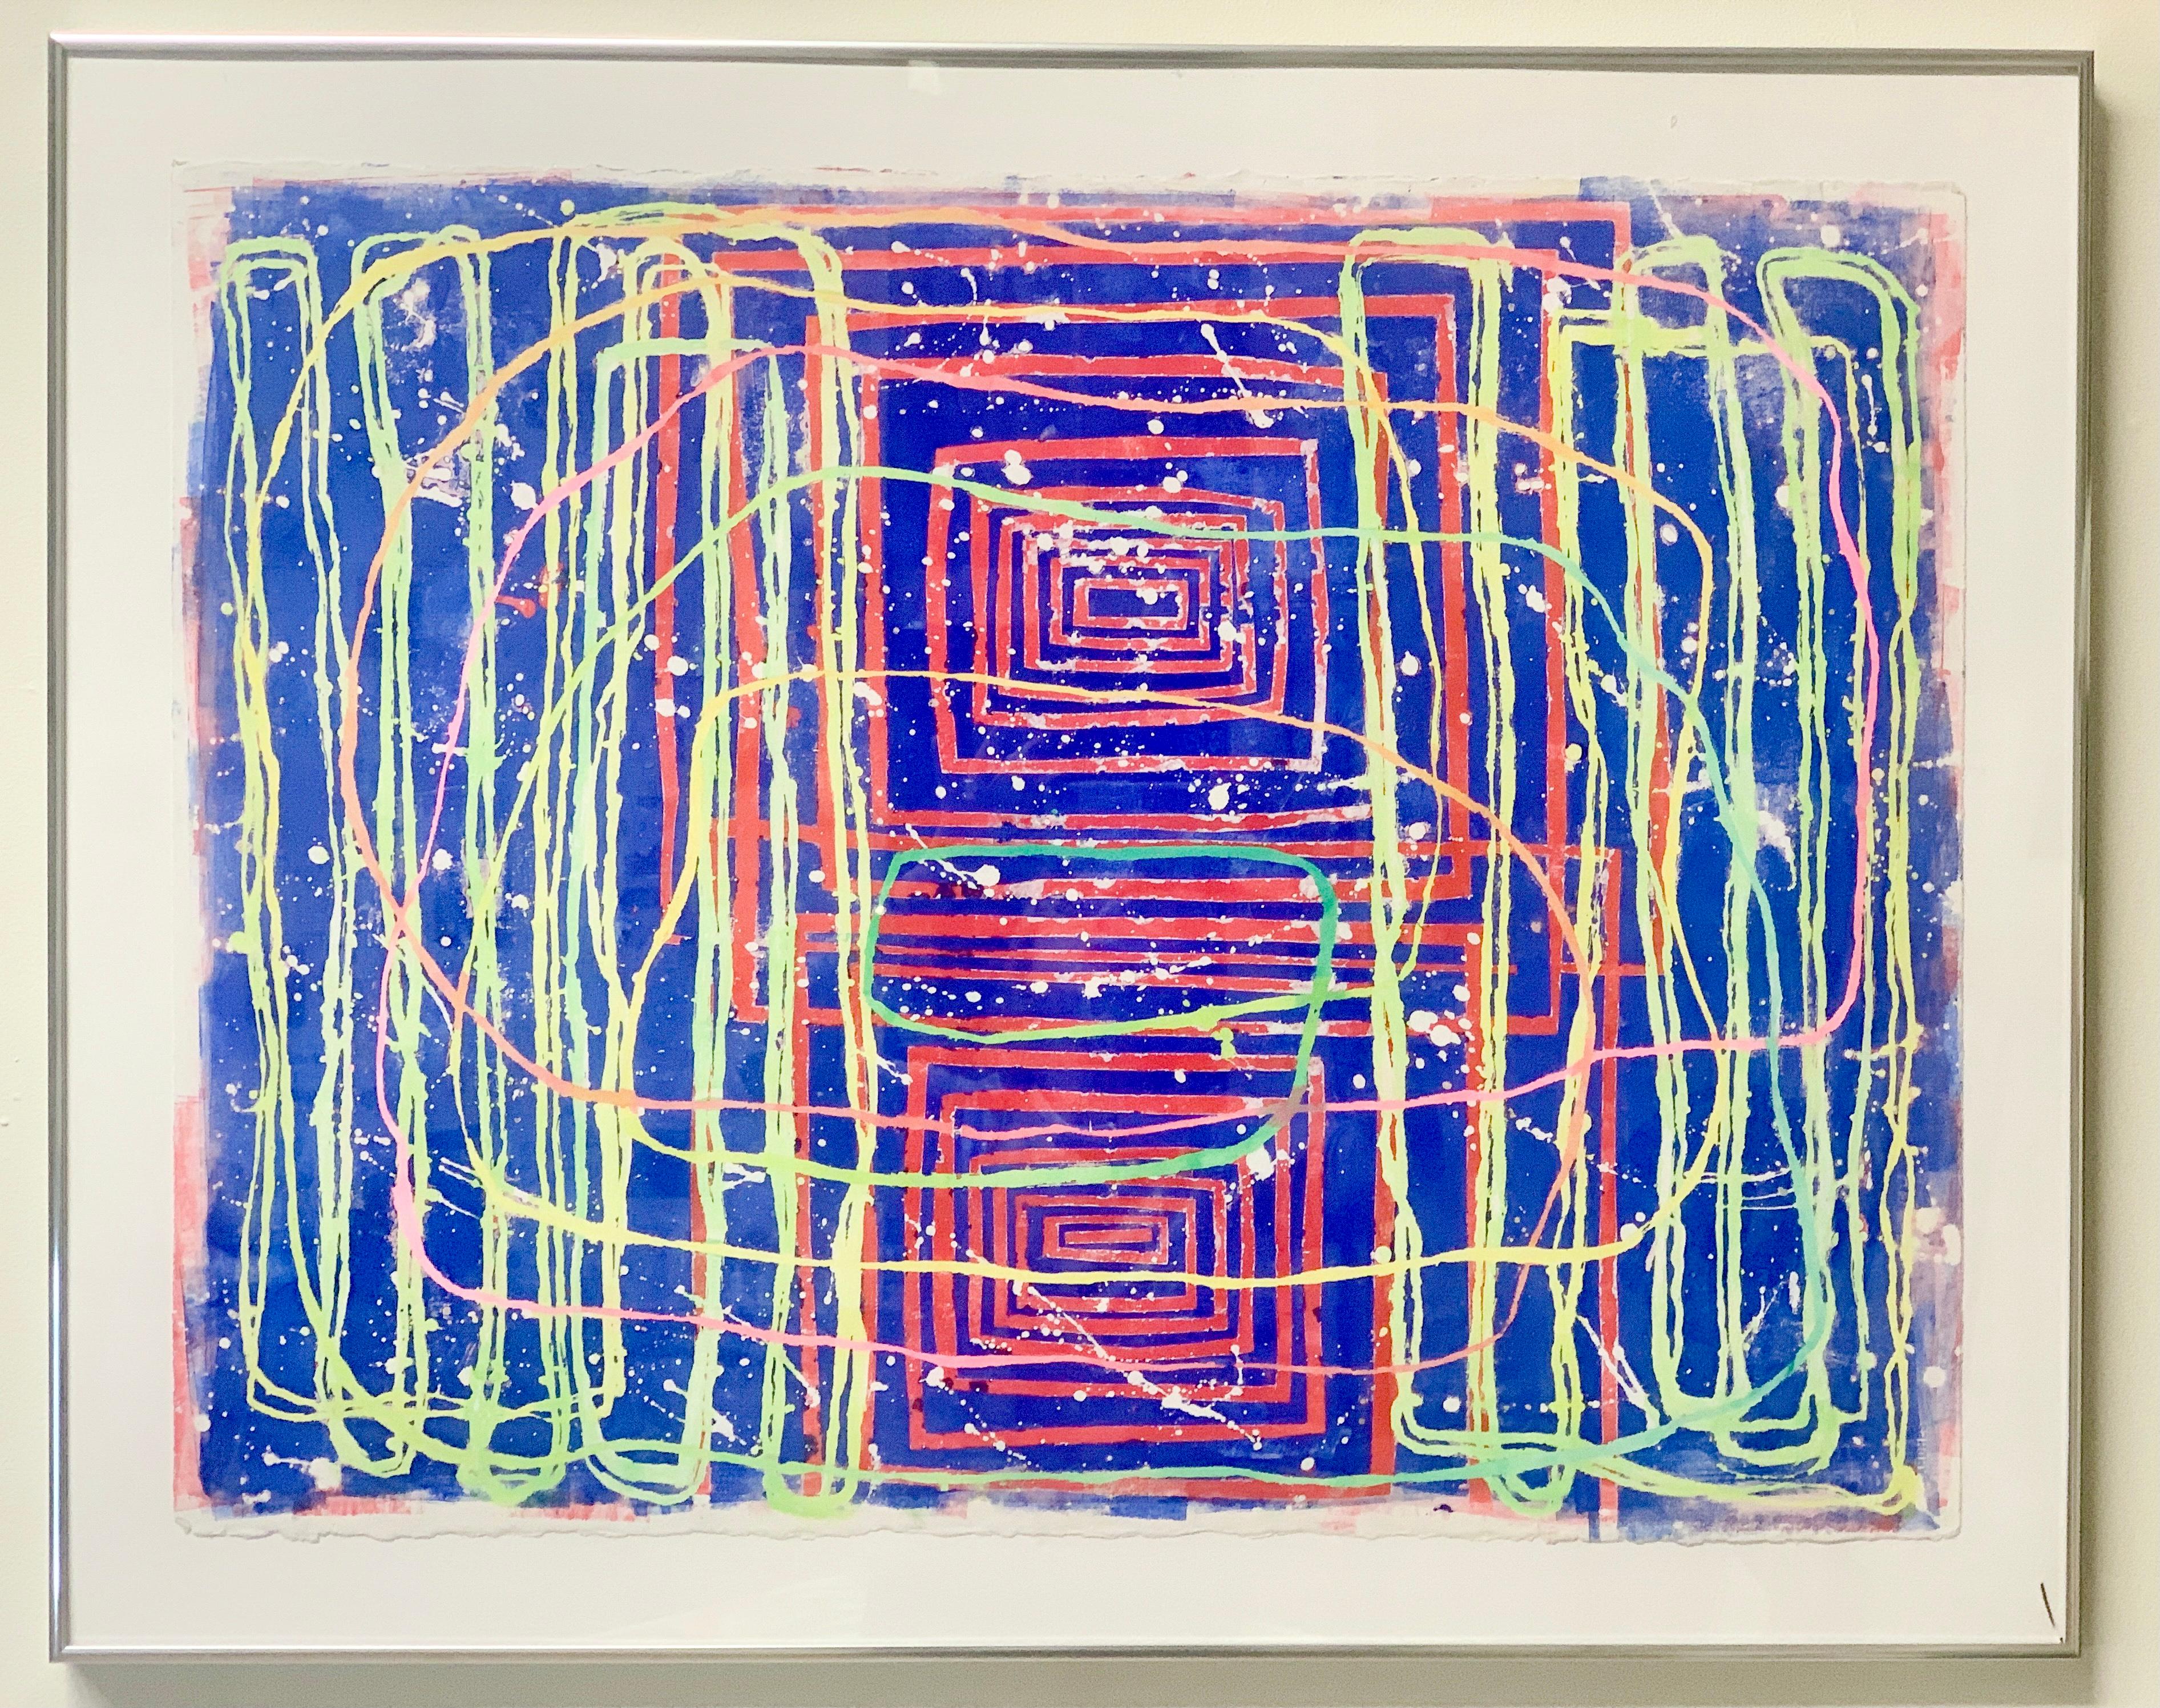 Kostenloser Versand mit dem Code ART2021SHIP bis Dezember! Paula Cahills lineare, abstrakte Kompositionen bestehen oft aus einer einzigen, leuchtenden Linie, die sich schlängelt, die Farbe wechselt und sich nahtlos wieder mit sich selbst verbindet.